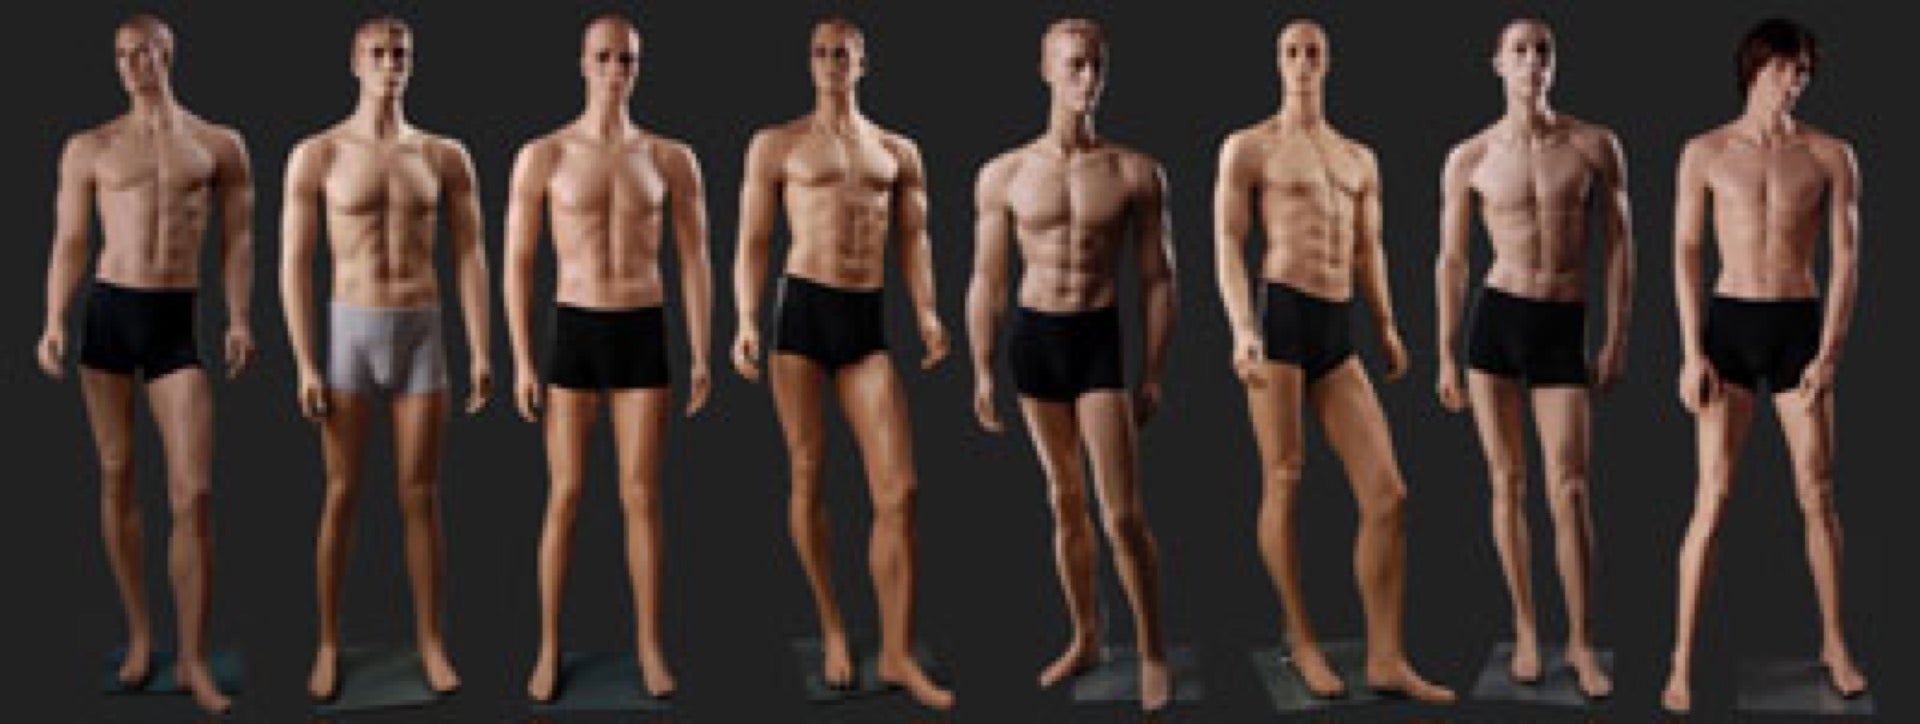 Разные мужские телосложения